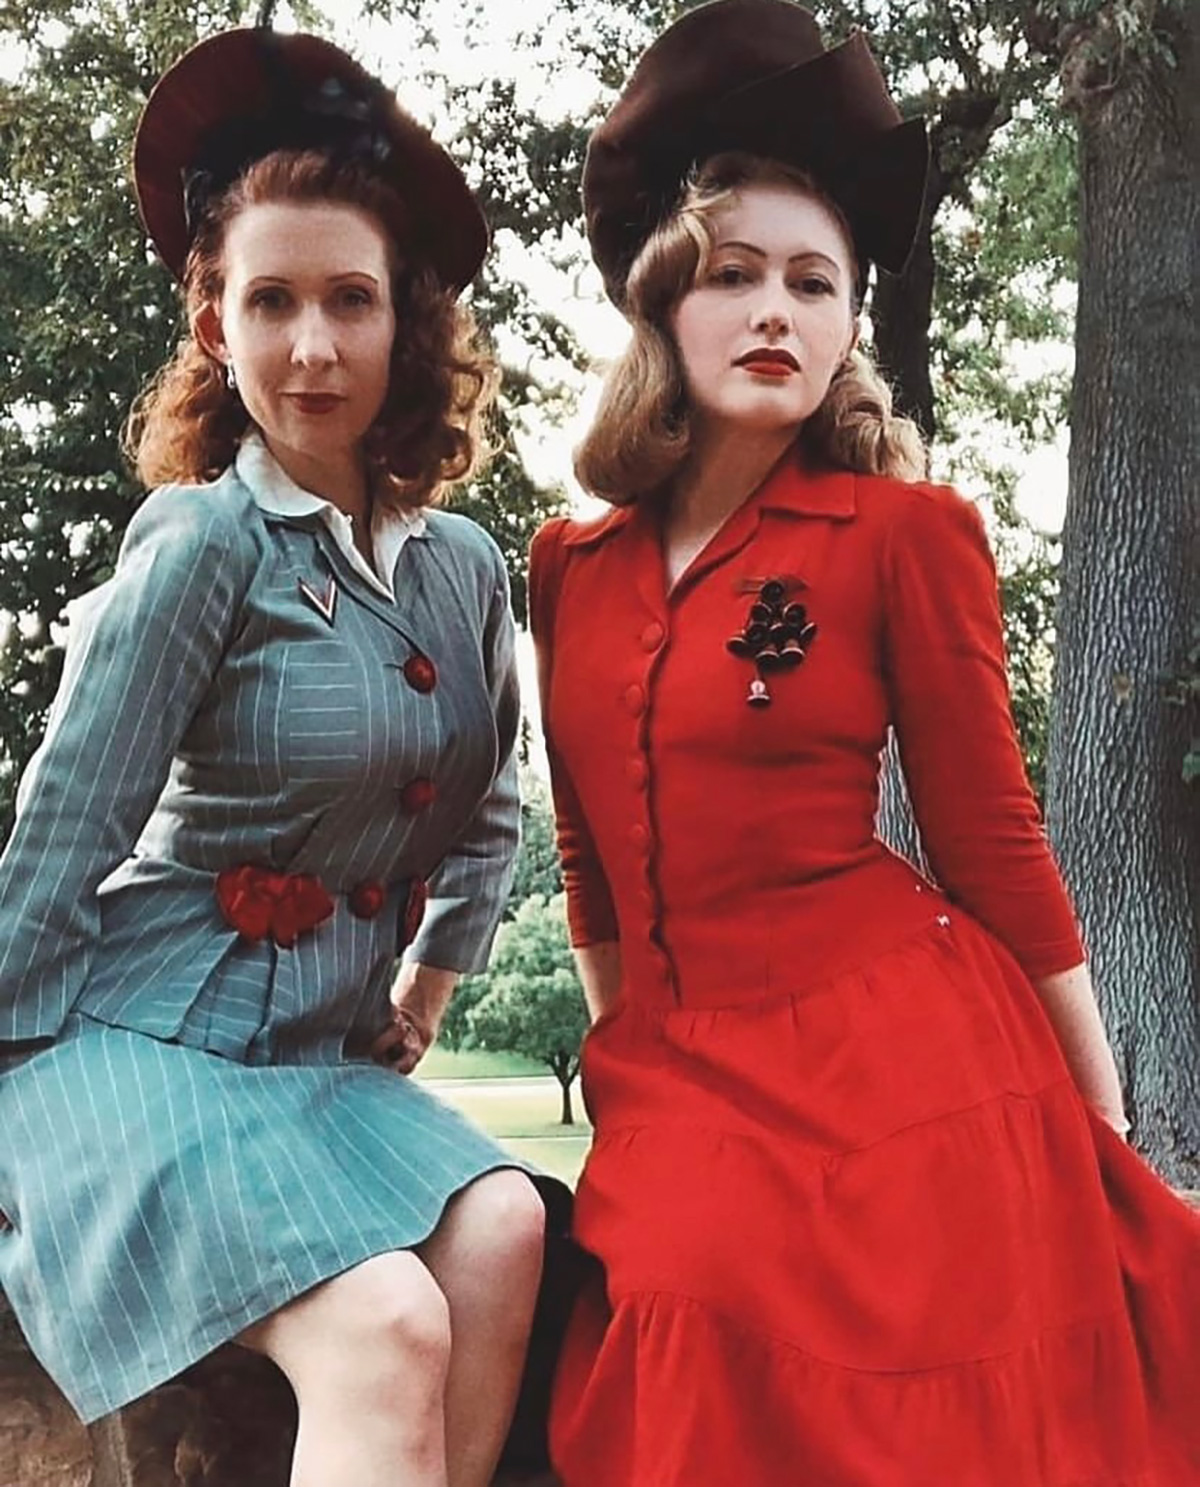 1940s women’s dress